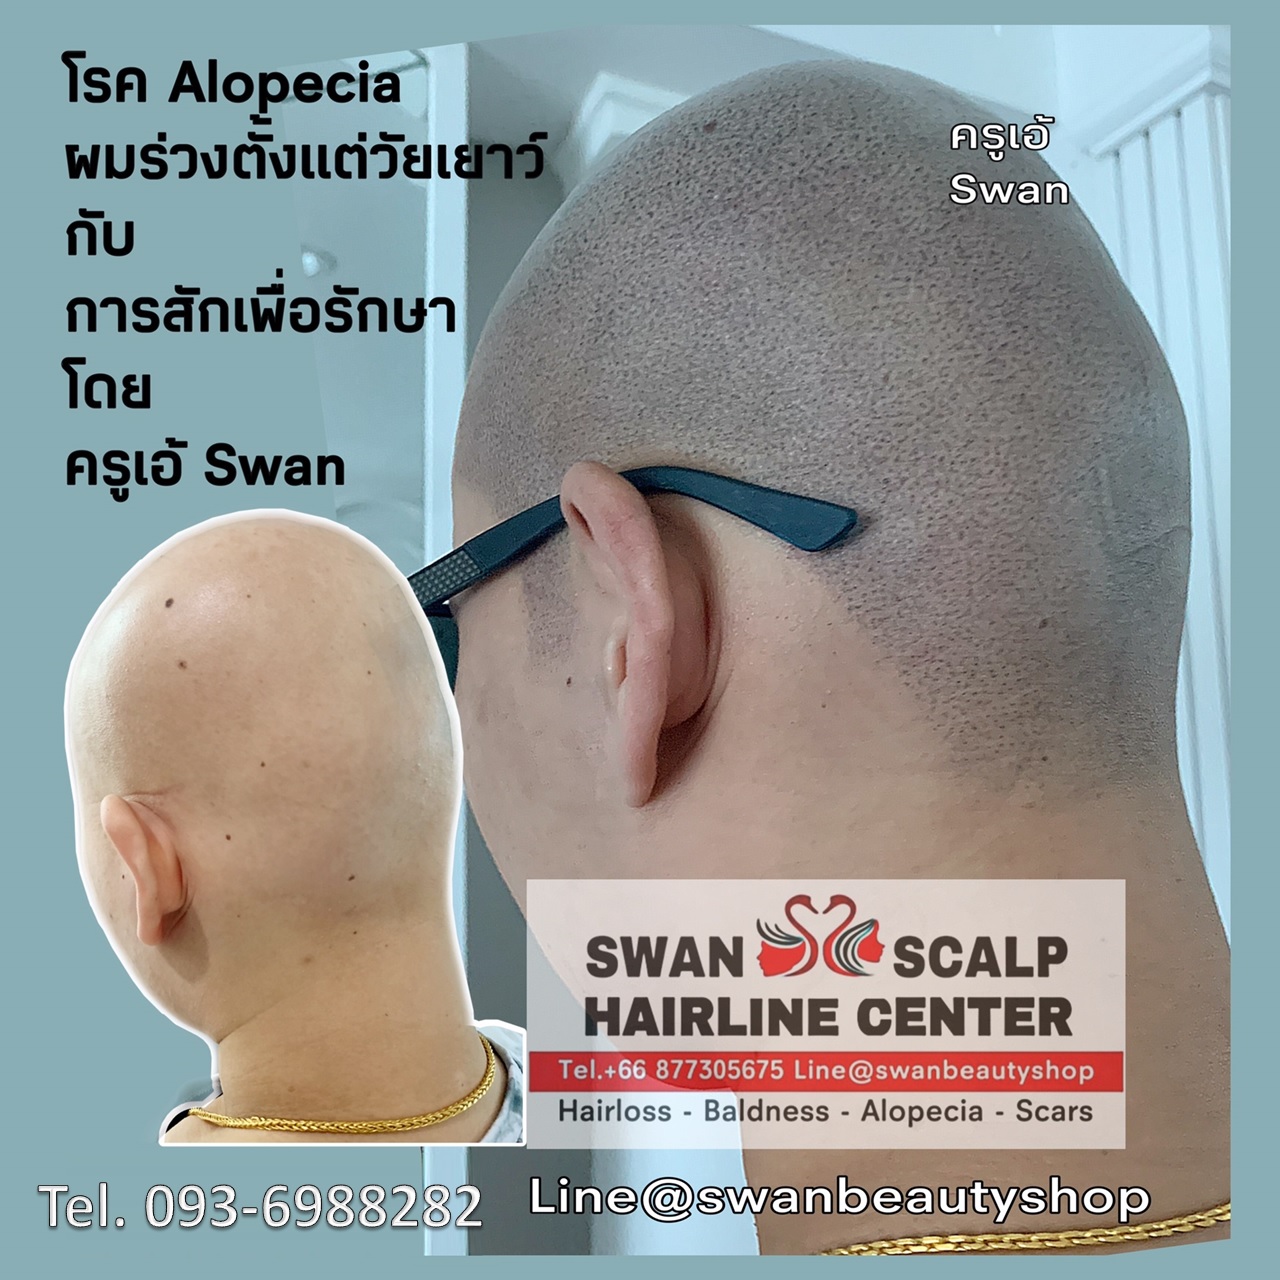 สักเพื่อรักษาโรค Alopecia